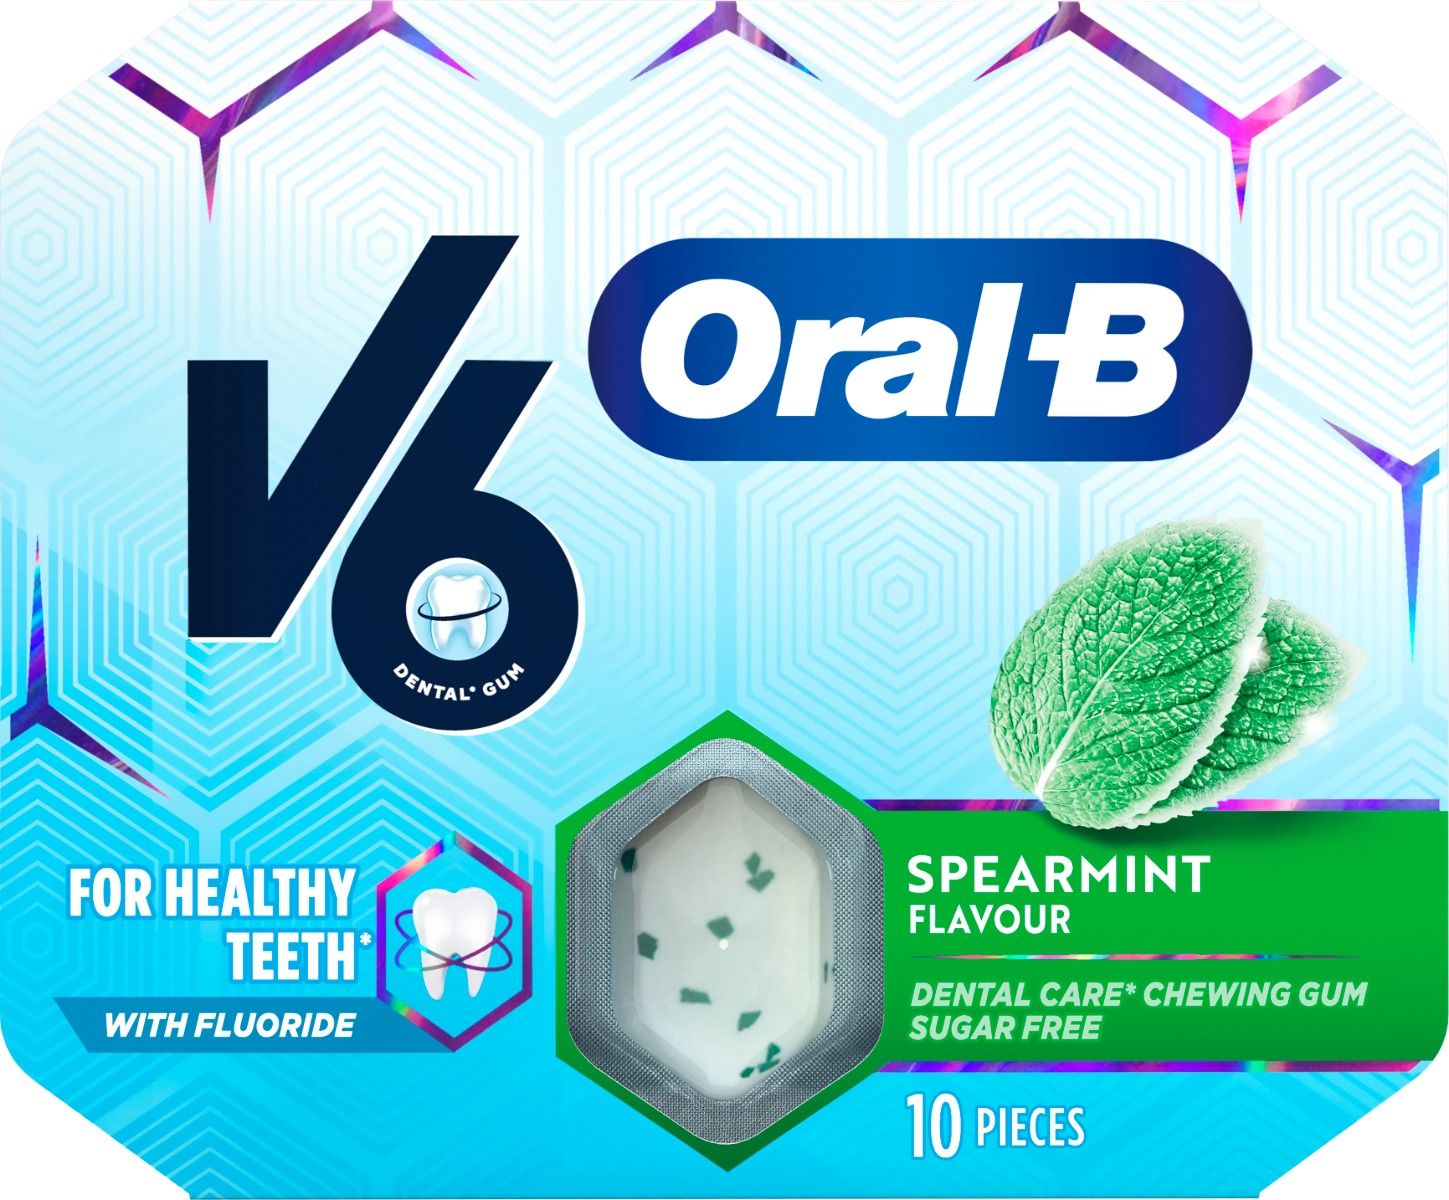 V6 Oral-B Spearmint 10 st